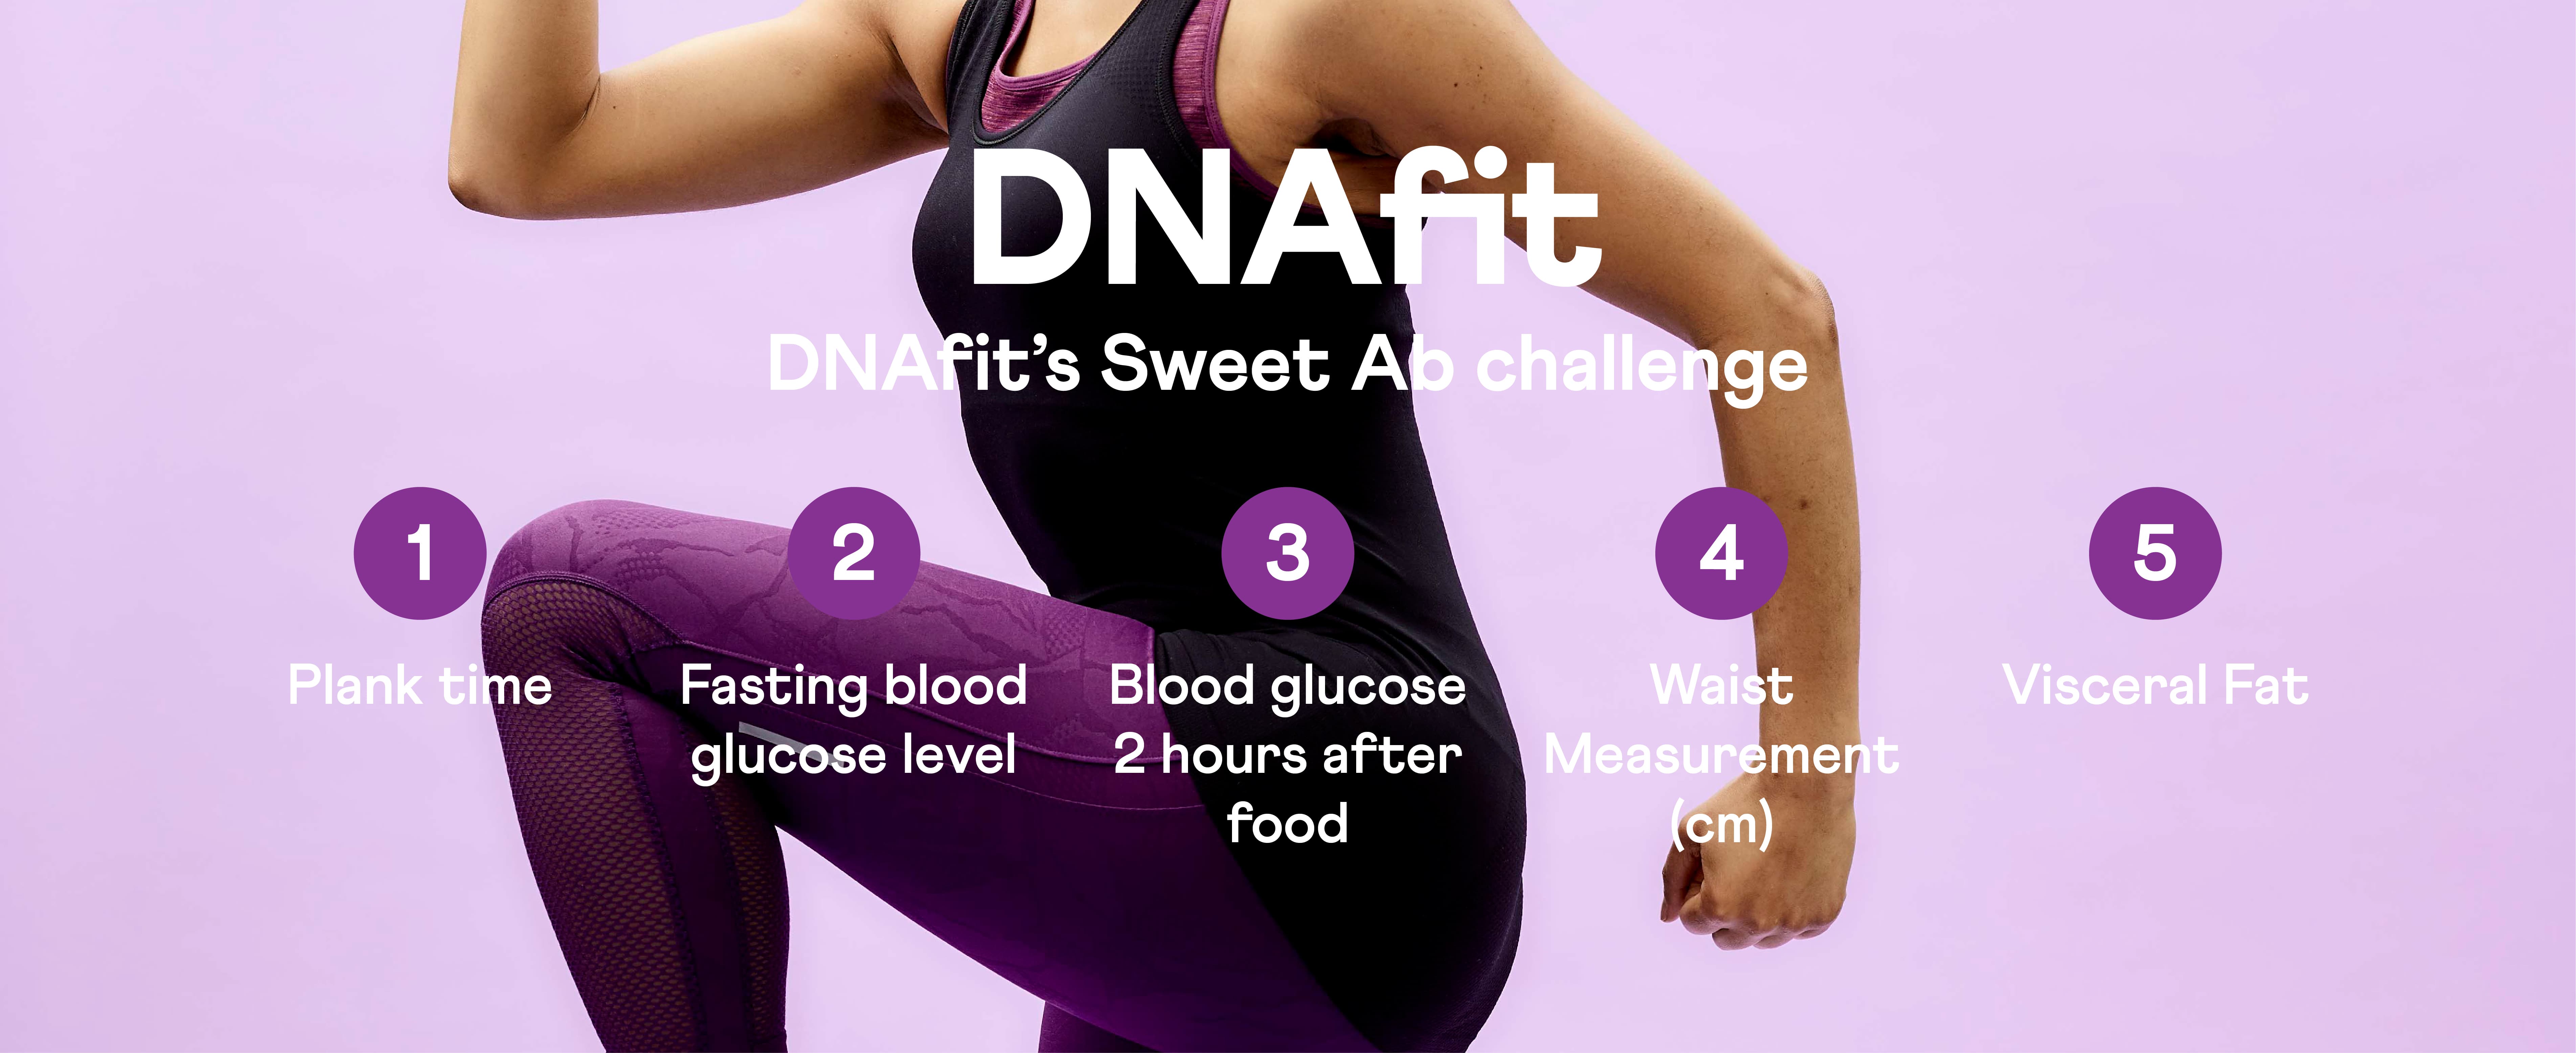 Sweet ab challenge | DNAfit blog